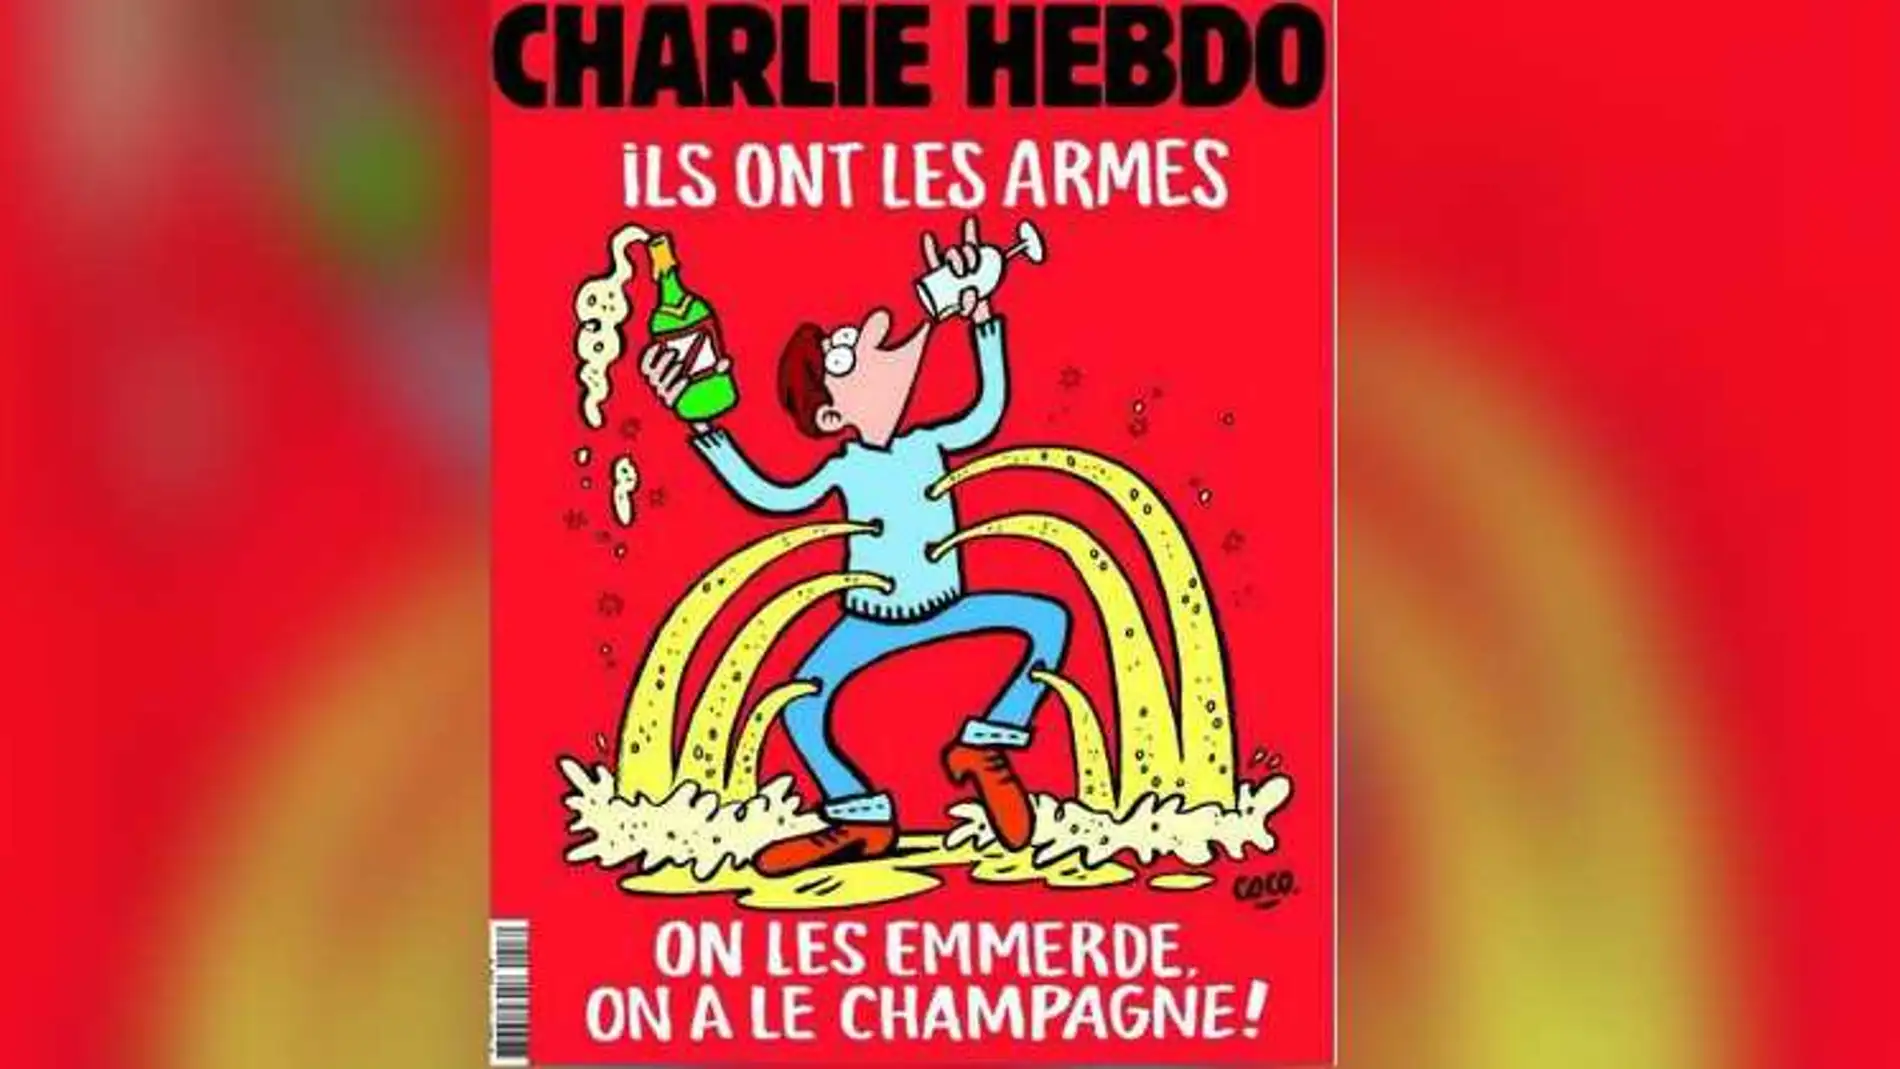 Imagen de la portada que publicará mañana el semanario satírico 'Charlie Hebdo' tras los atentados de París